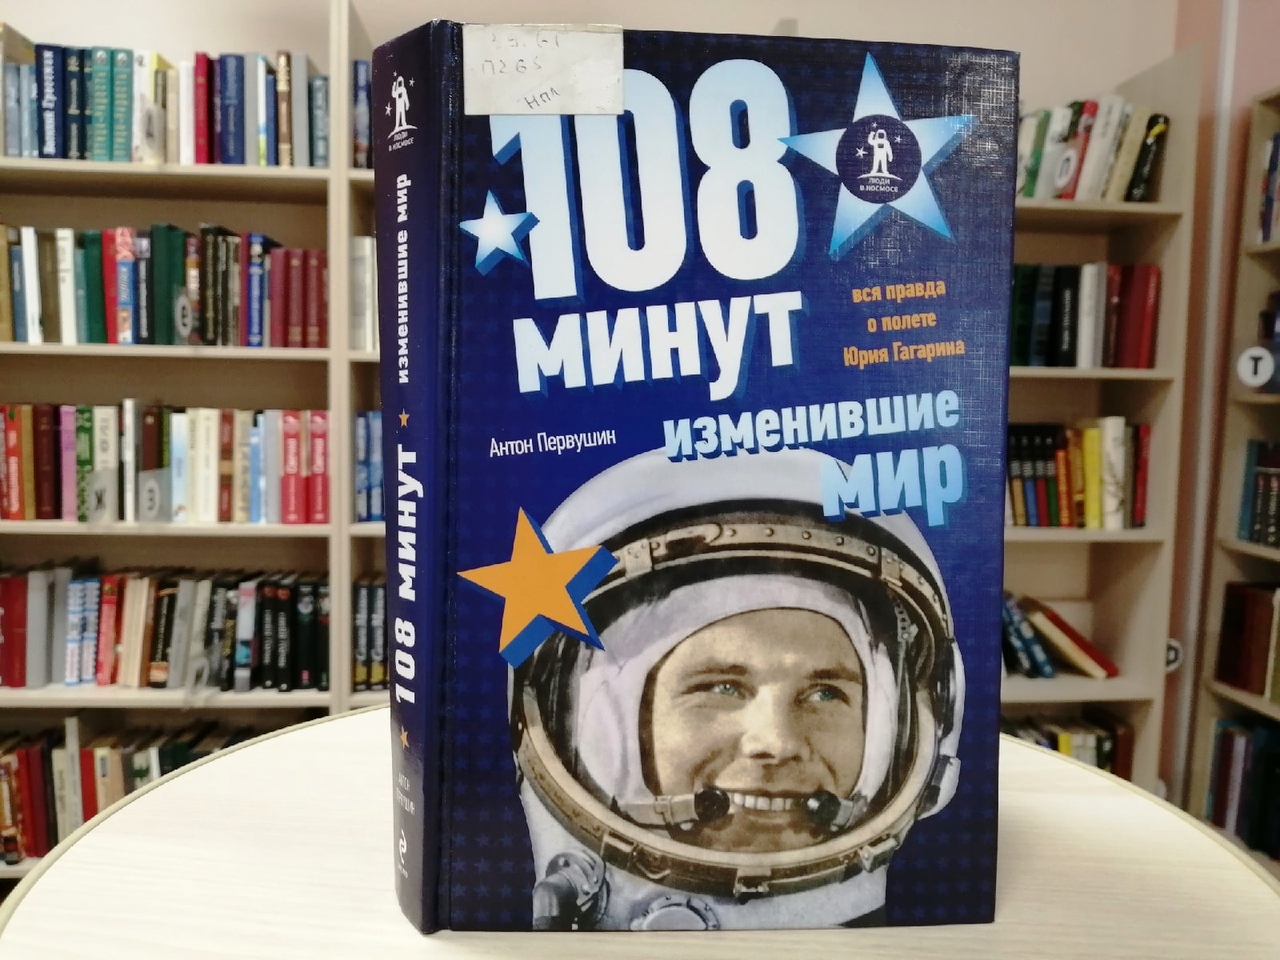 108 минут и вся жизнь. Книга 108 минут изменившие мир. Гагарин человек и Легенда книга.